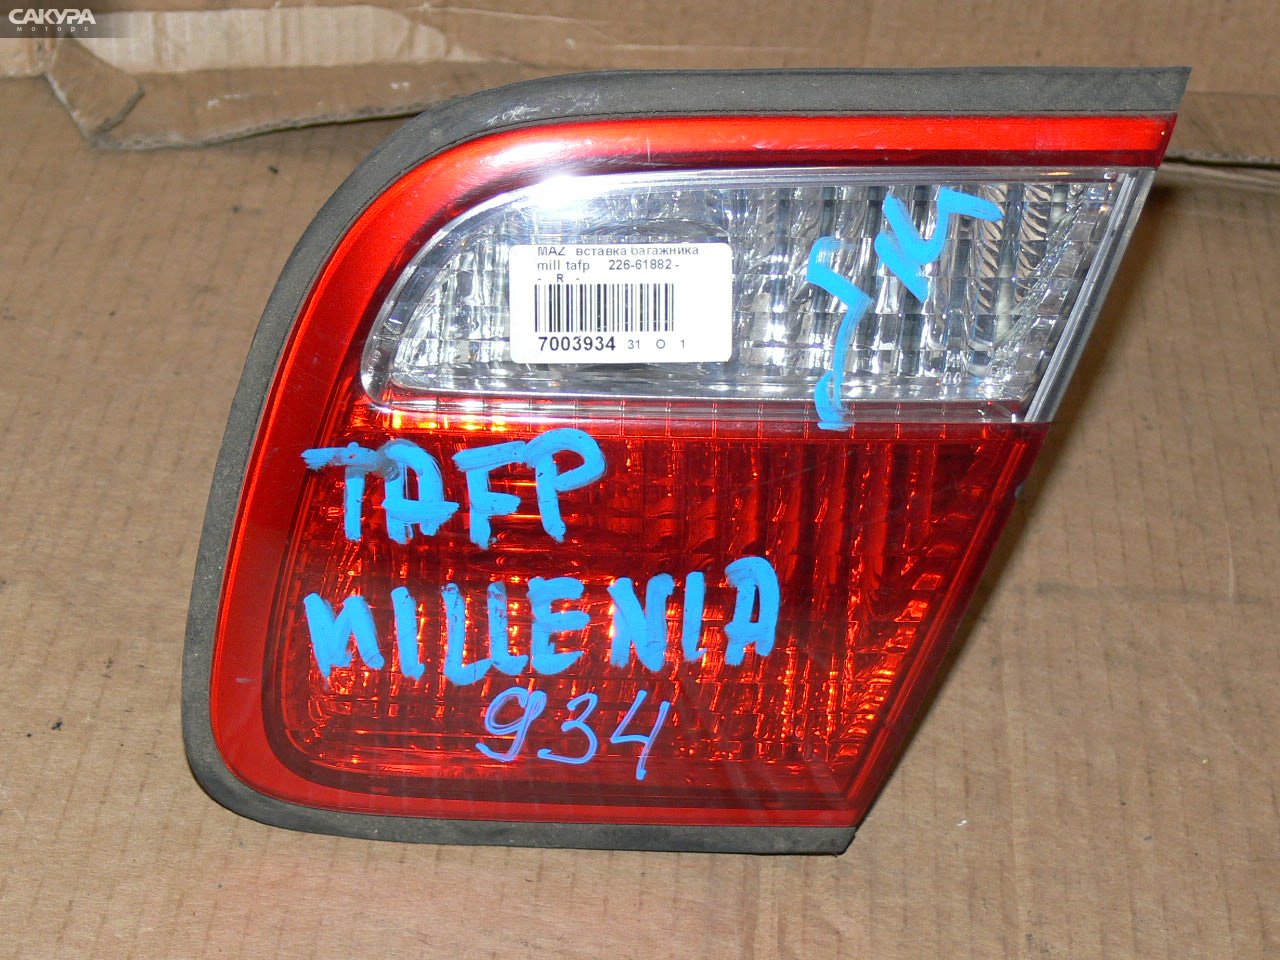 Фонарь вставка багажника правый Mazda Millenia TAFP 226-61882: купить в Сакура Иркутск.